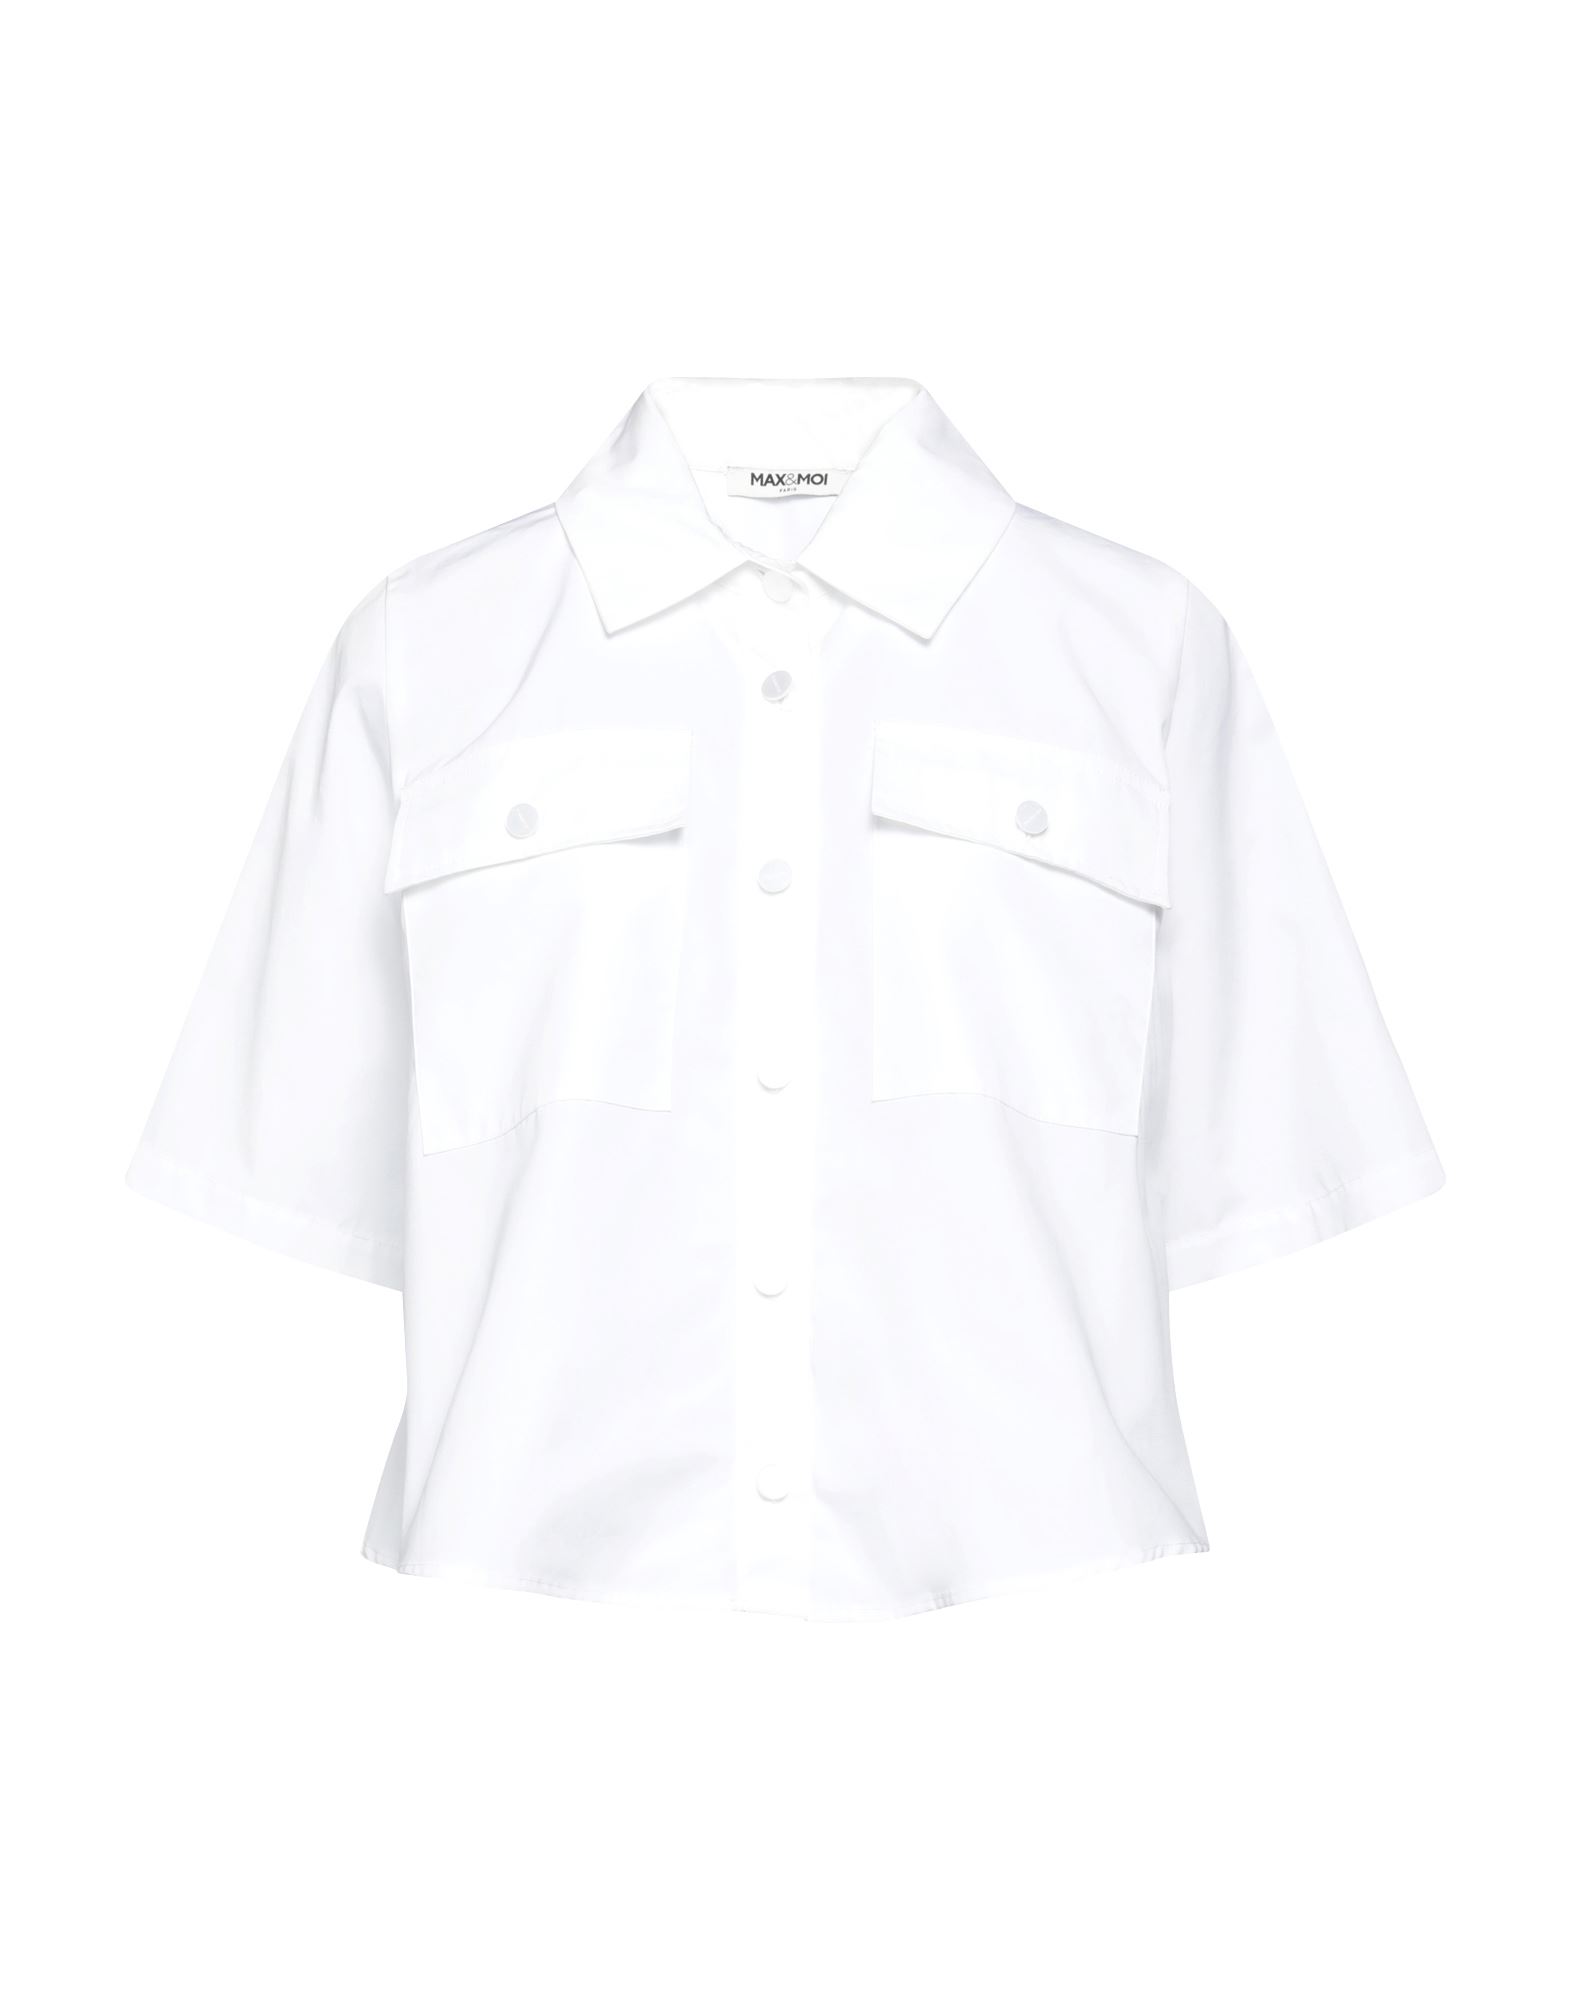 Max & Moi Woman Shirt White Size 2 Cotton